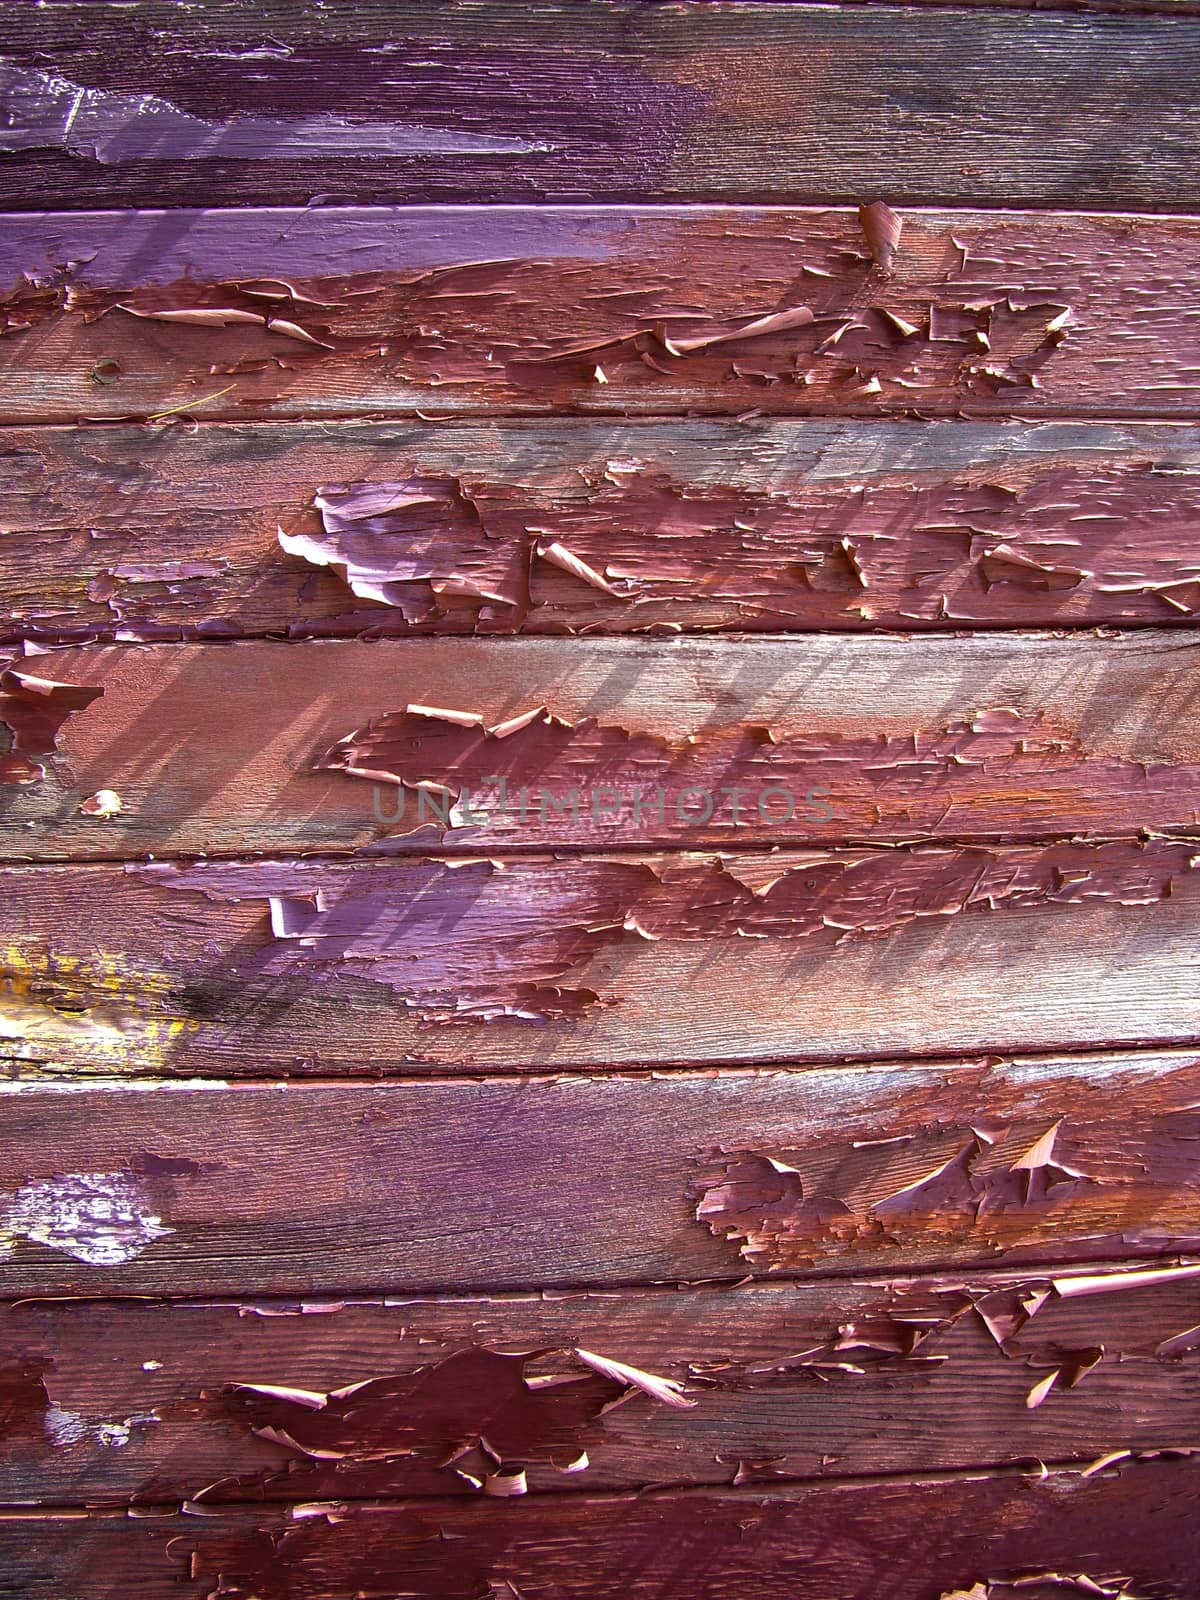 Peeling paint on old wood planks